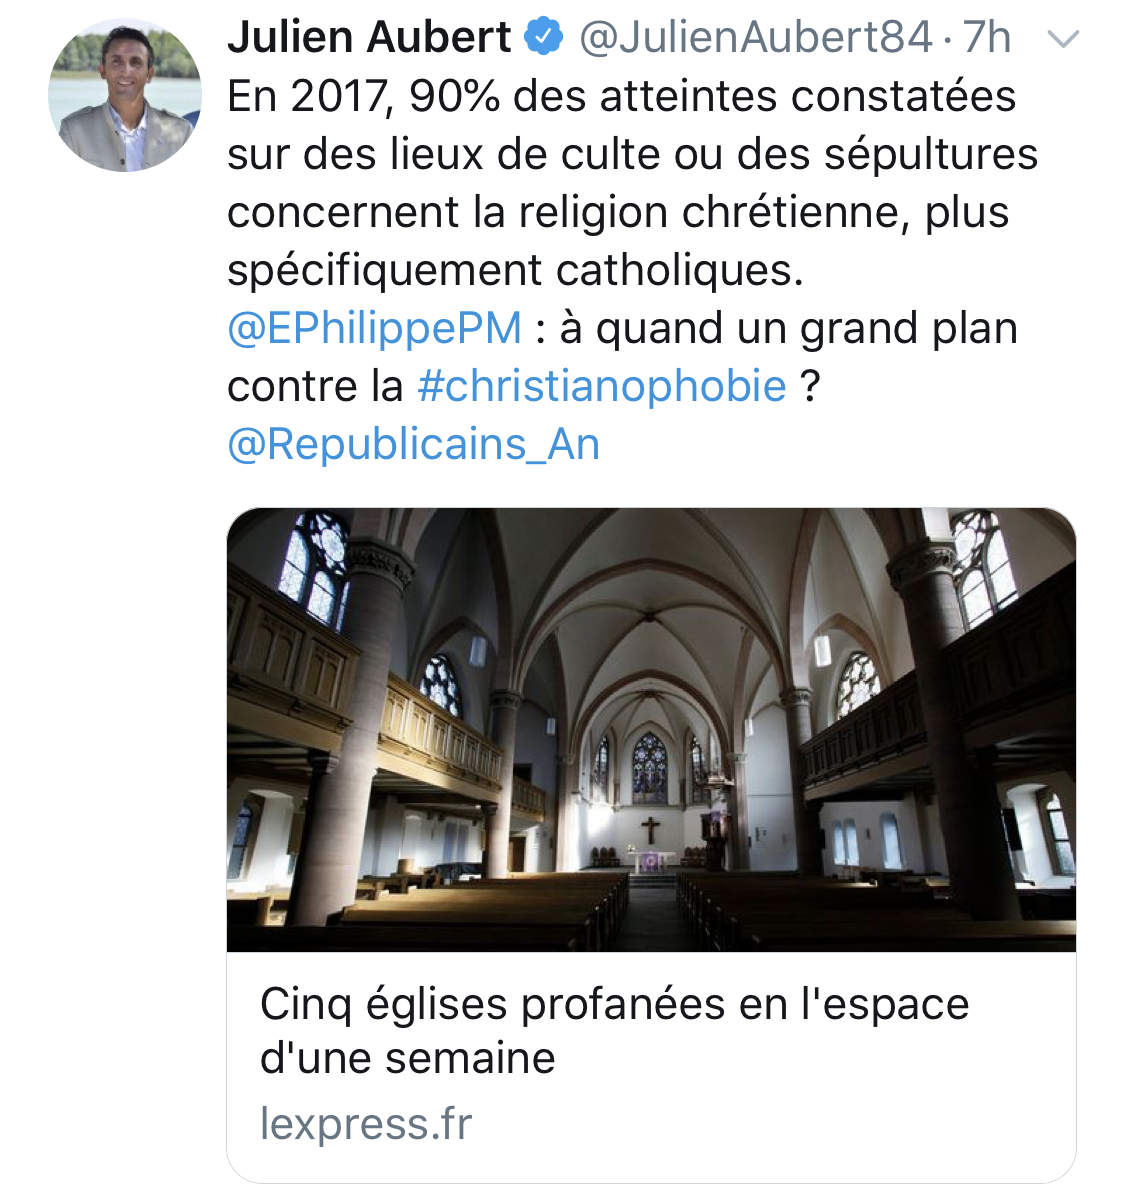 « À quand un grand plan contre la christianophobie ? » Le tweet de Julien Aubert